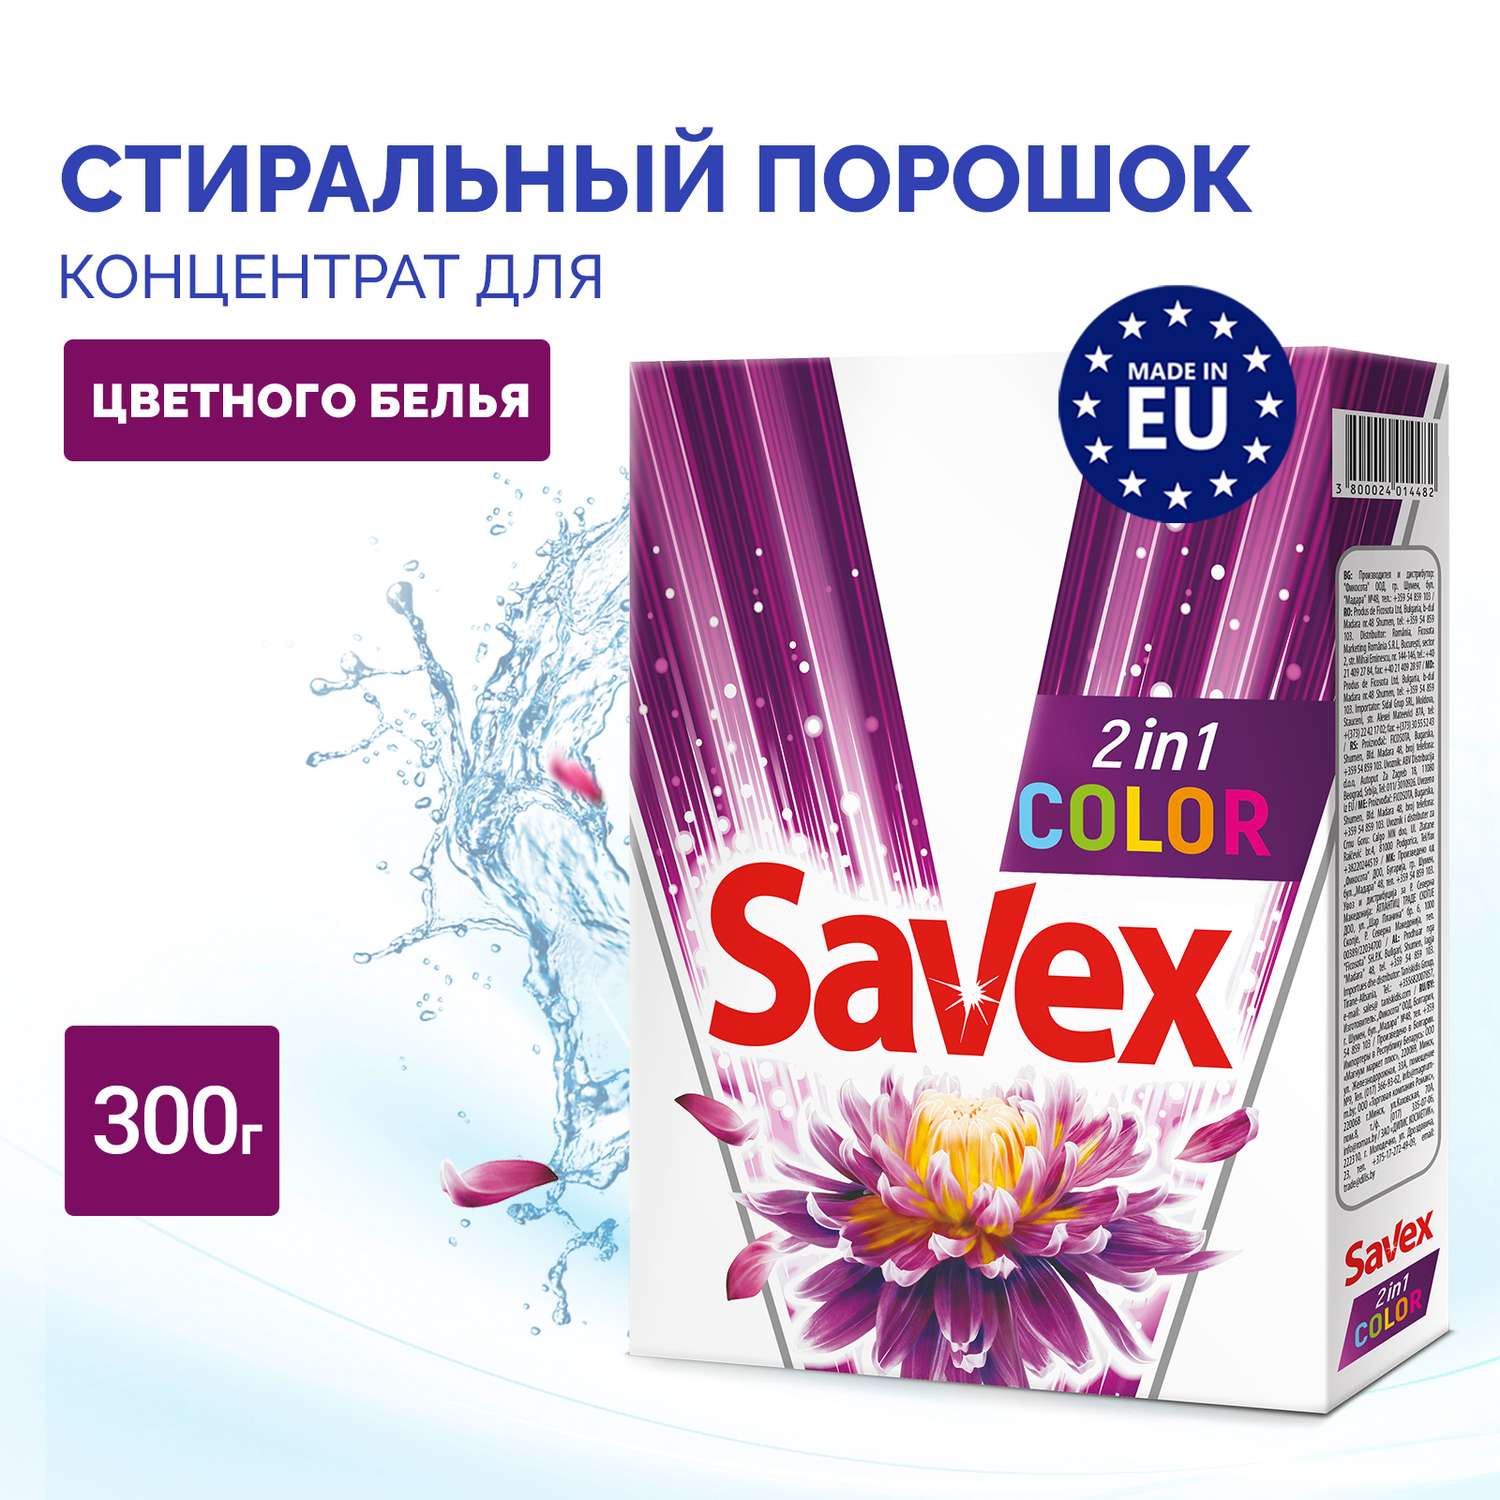 Стиральный порошок SAVEX 2 в 1 для цветного белья 300 гр - фото 2